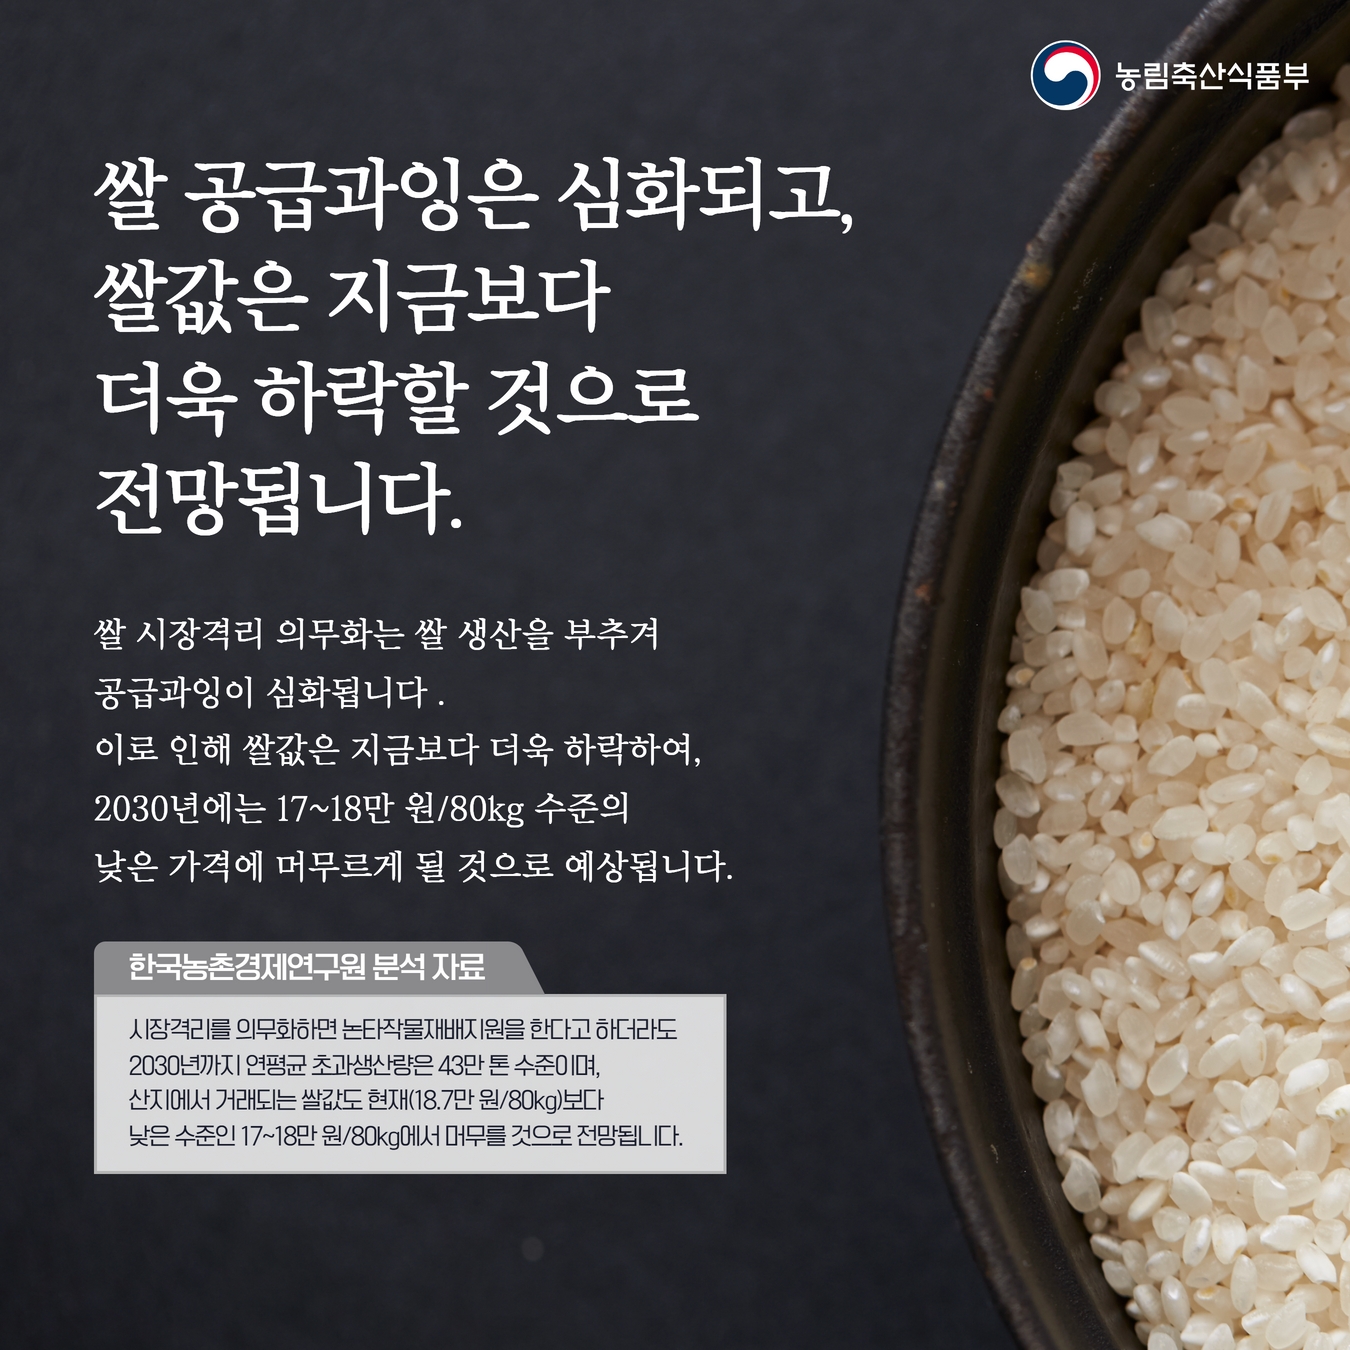 쌀 시장격리 의무화를 위한 양곡관리법 개정은 쌀값 안정의 근본적인 해결책이 아닙니다. 3.jpg